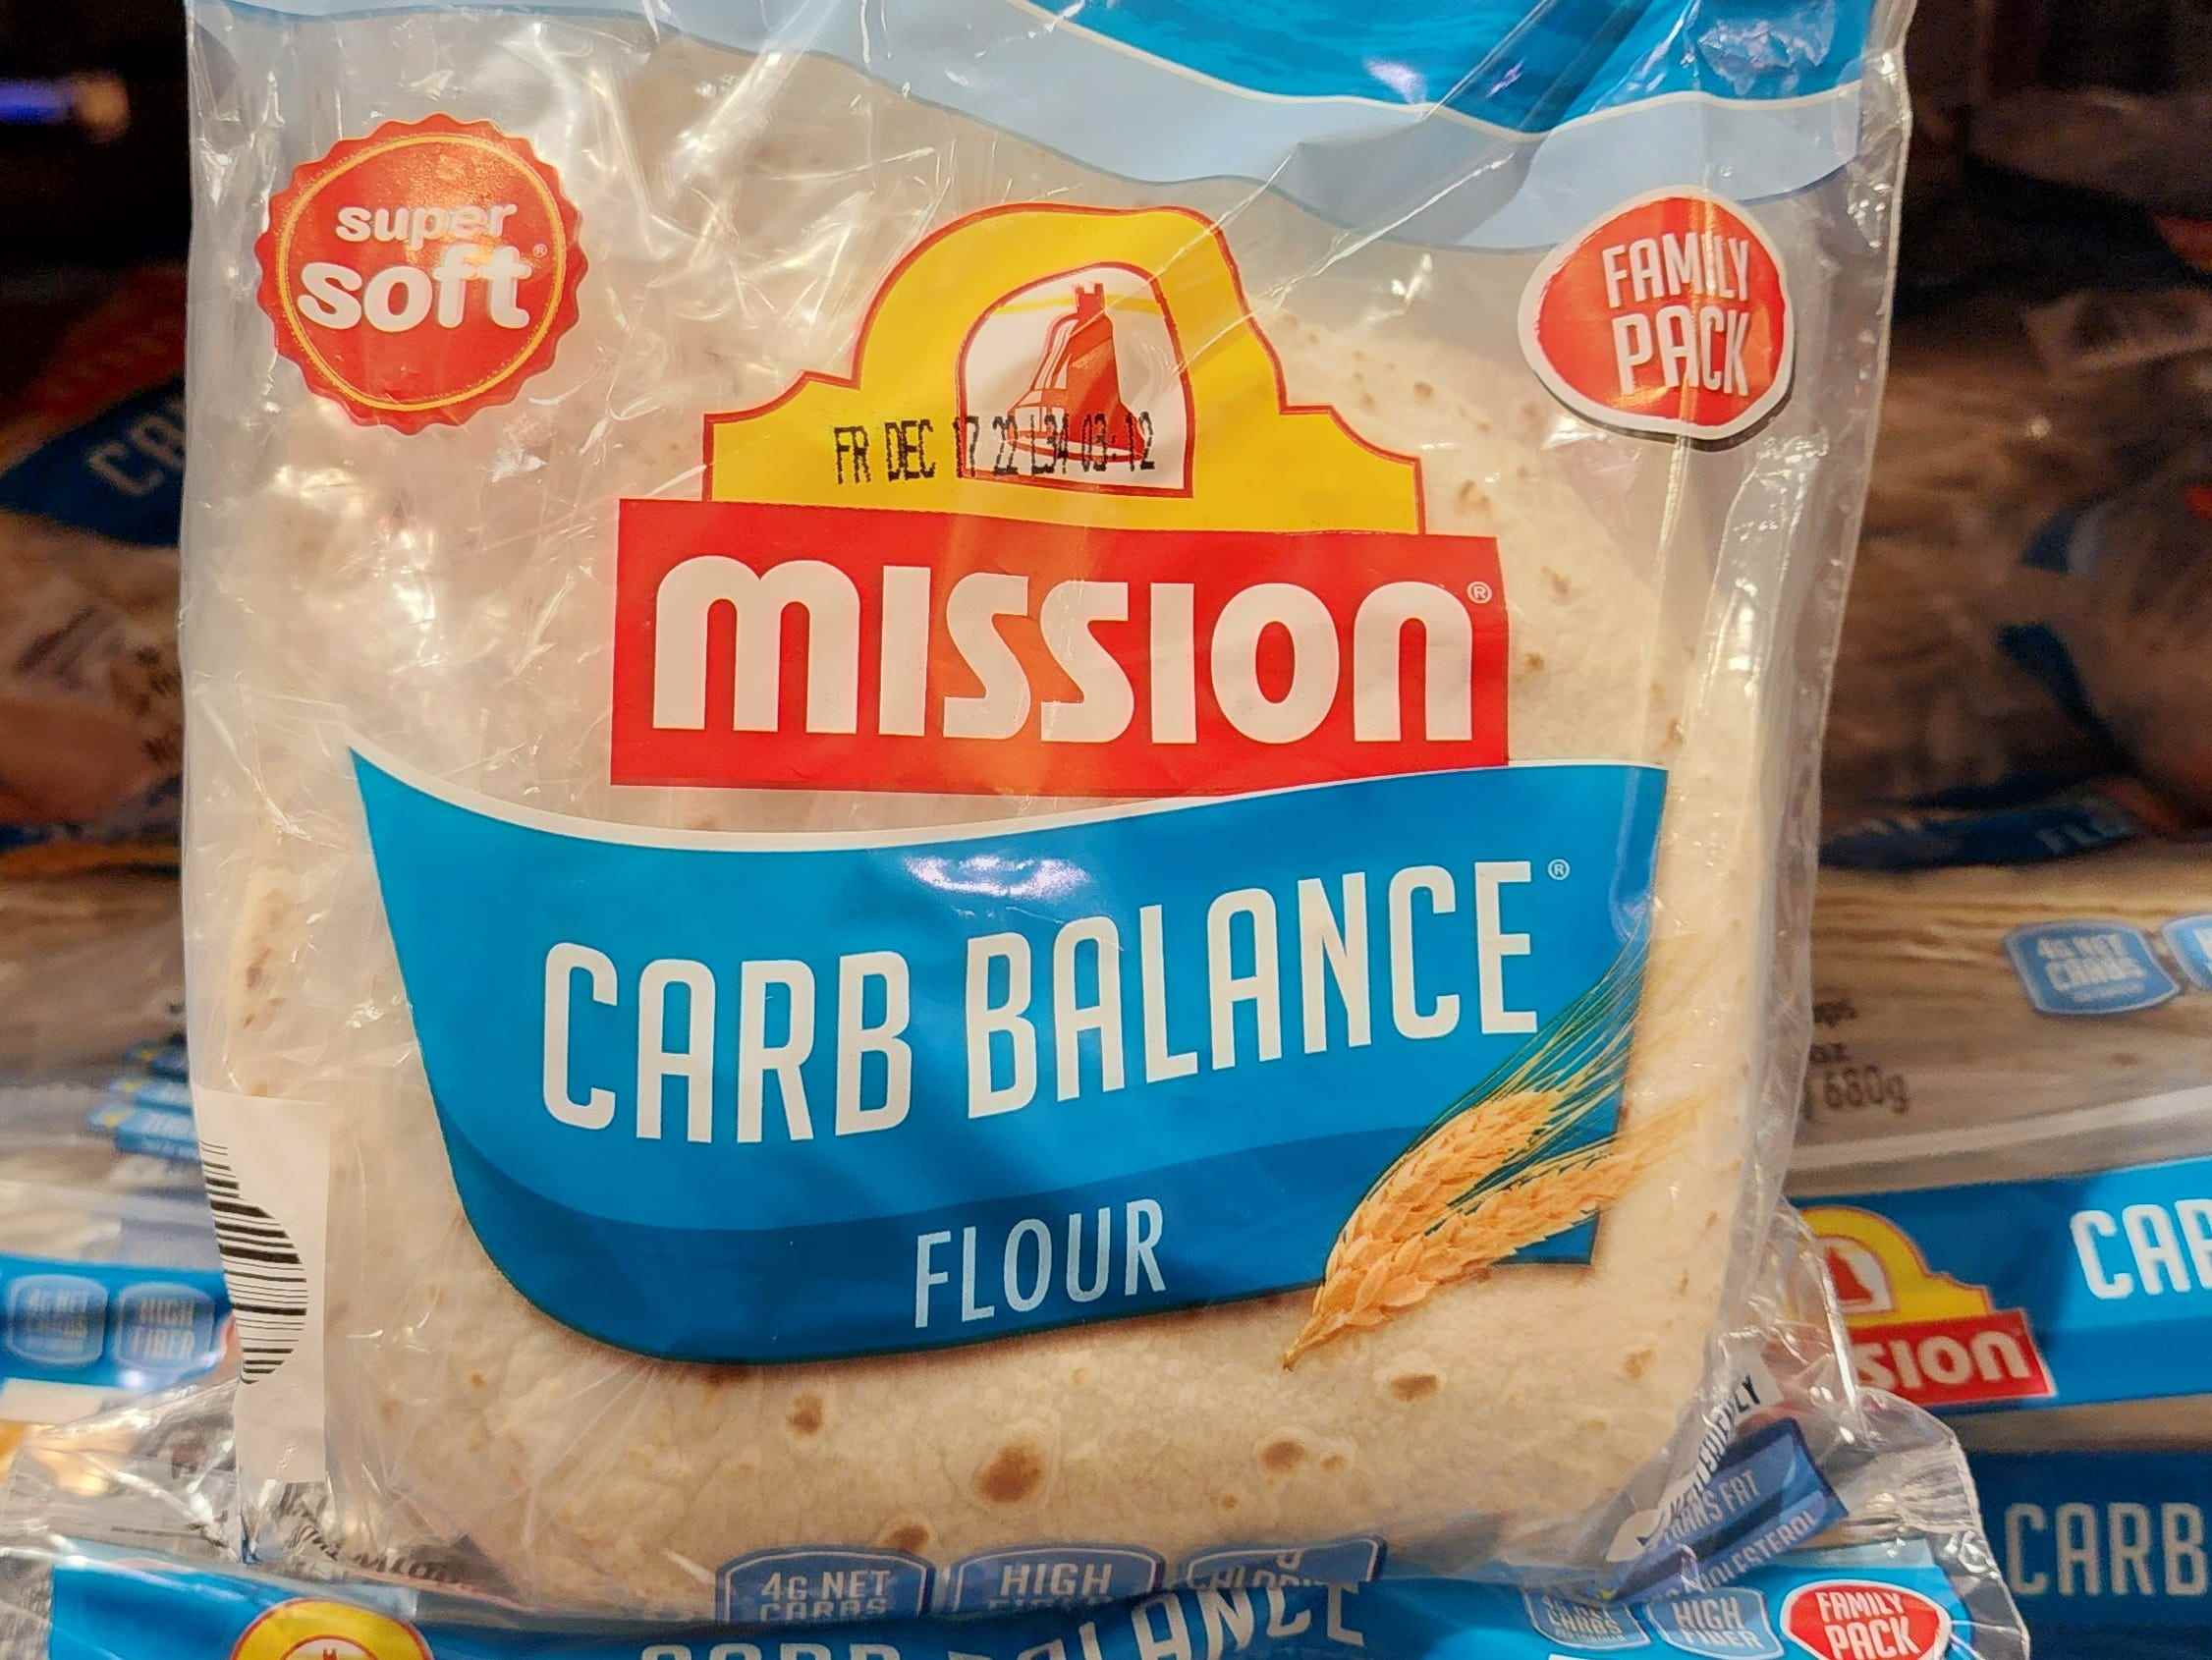 Der Autor hält eine Packung Mission Carb-Balance-Mehl-Tortillas in der Hand